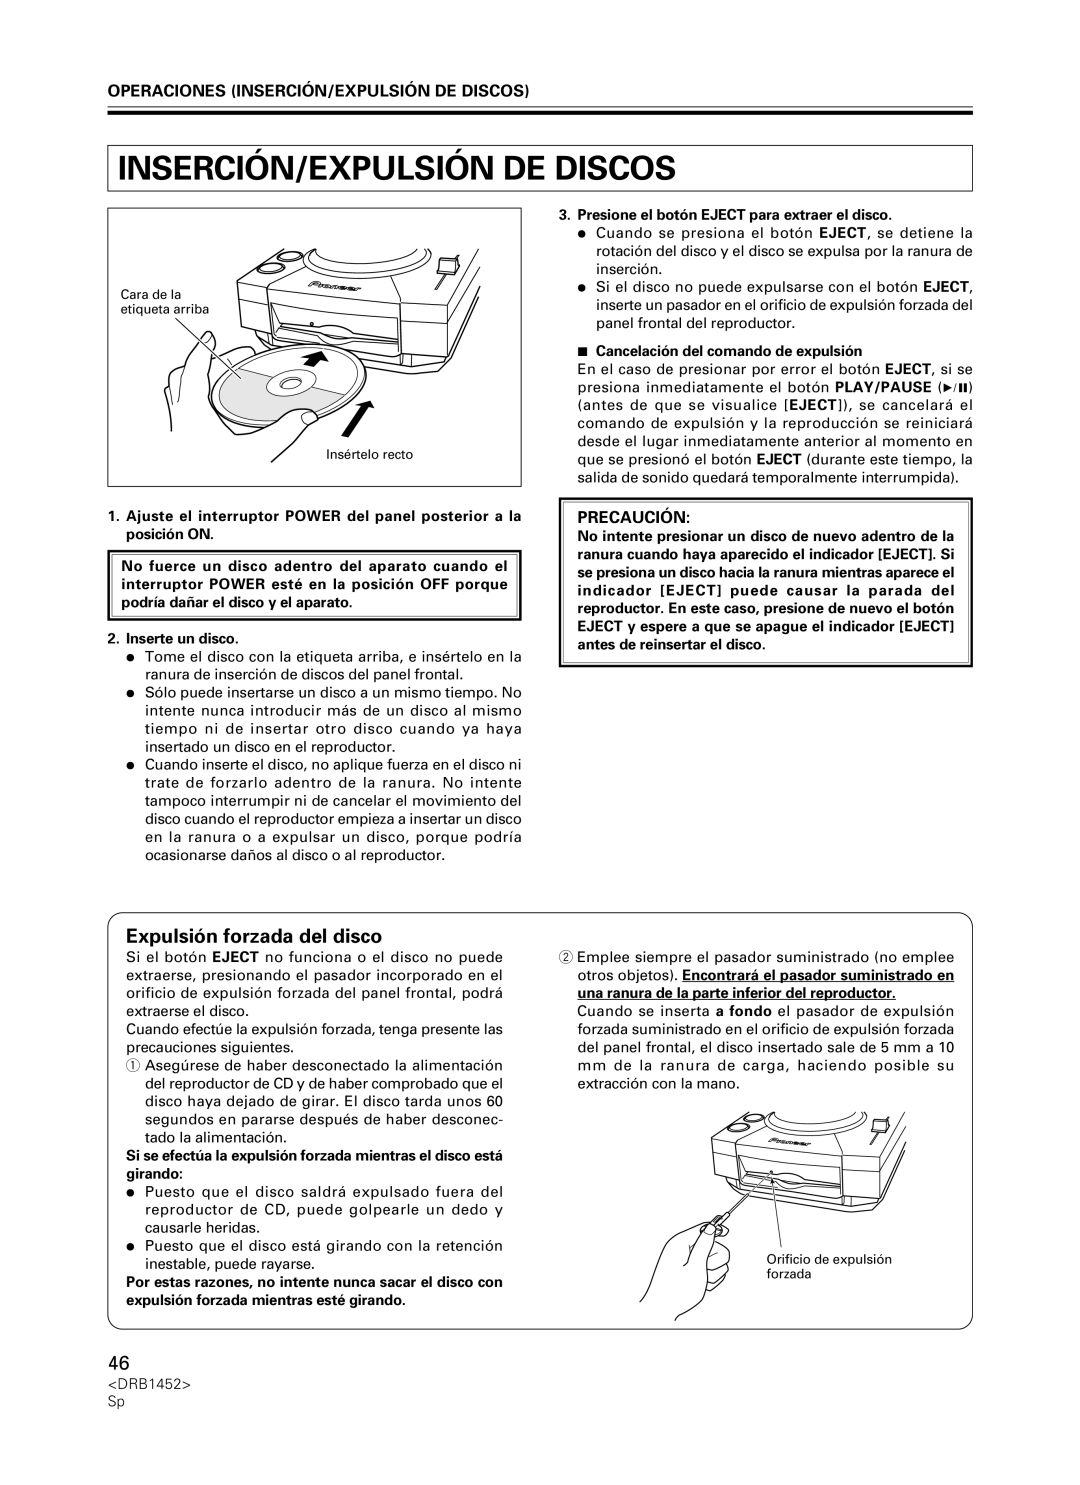 Pioneer CDJ-400 manual Expulsión forzada del disco, Operaciones Inserción/Expulsión De Discos, Precaución 